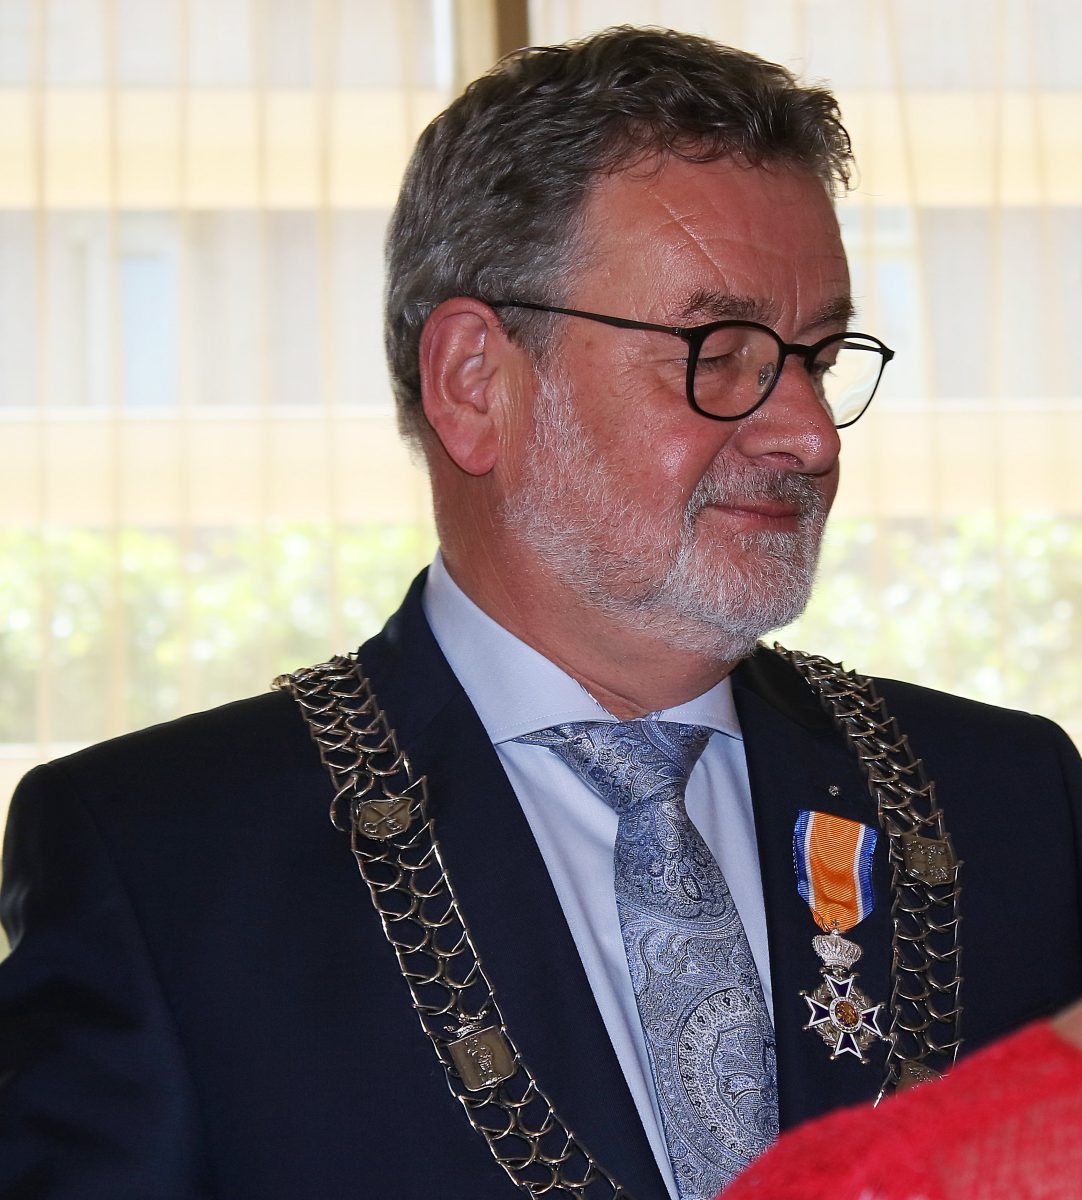 Afscheid burgemeester Albert Rodenboog